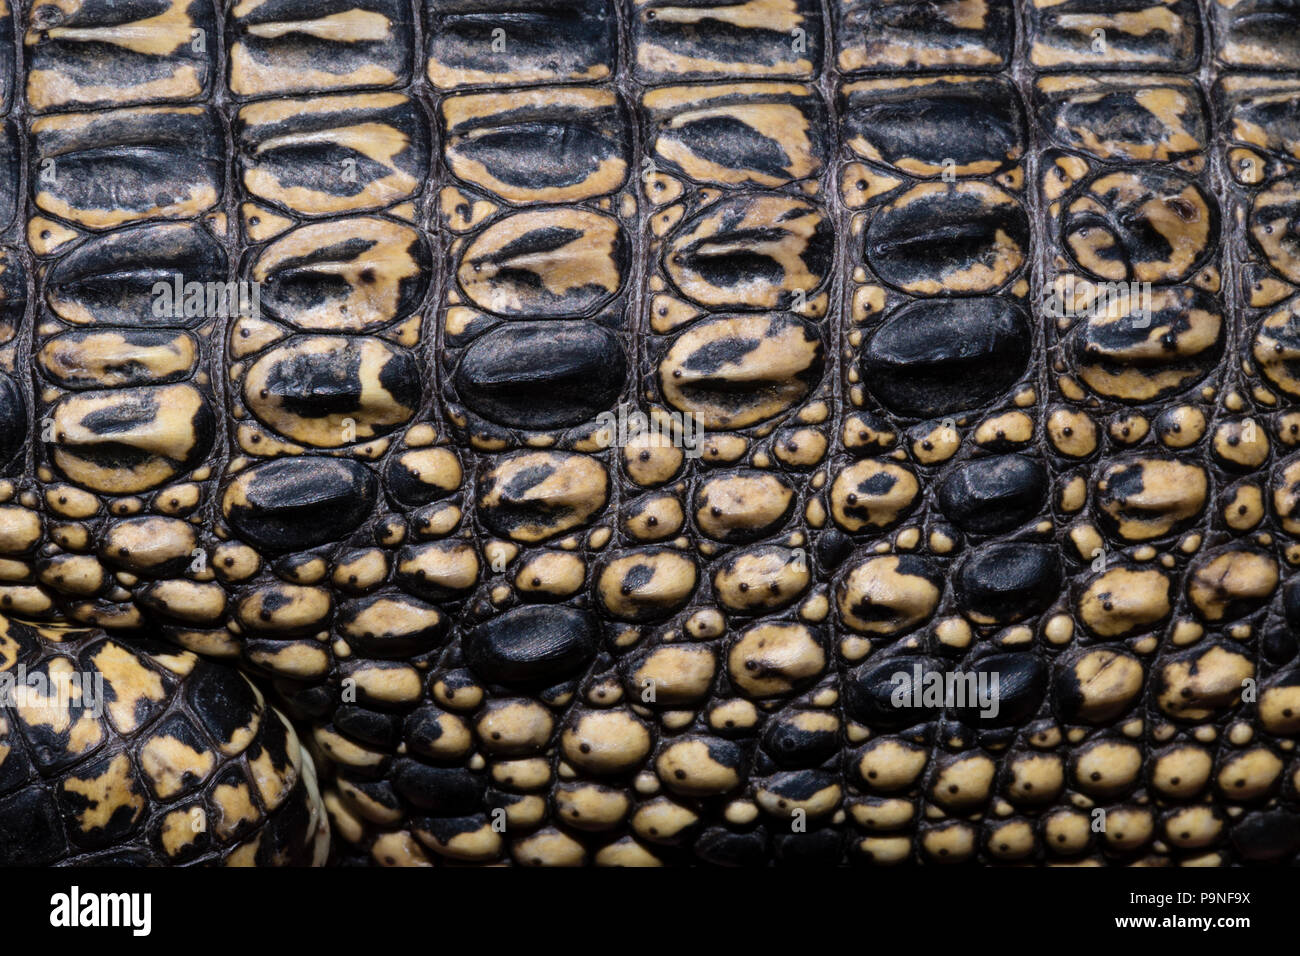 Ledrig und geschmeidig Schuppen und Haut eines jungen Salzwasser Krokodil. Stockfoto